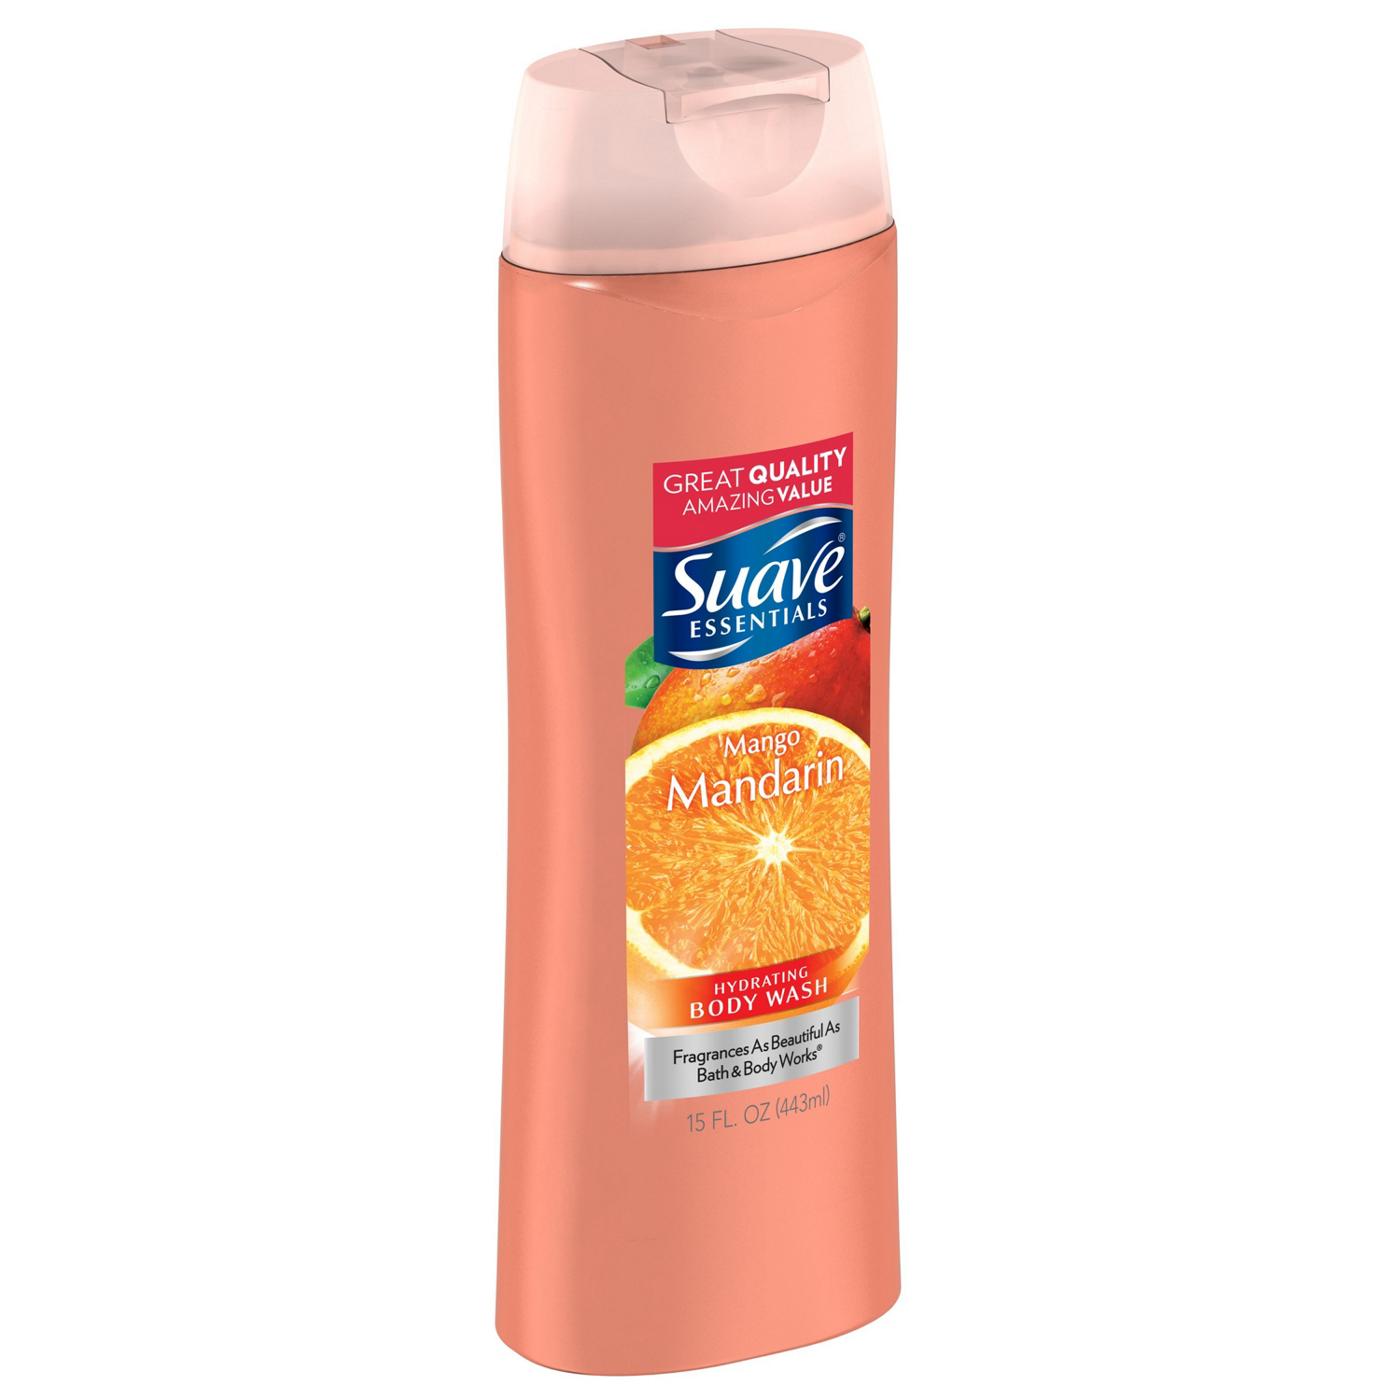 Suave Essentials Mango Mandarin Body Wash; image 3 of 4